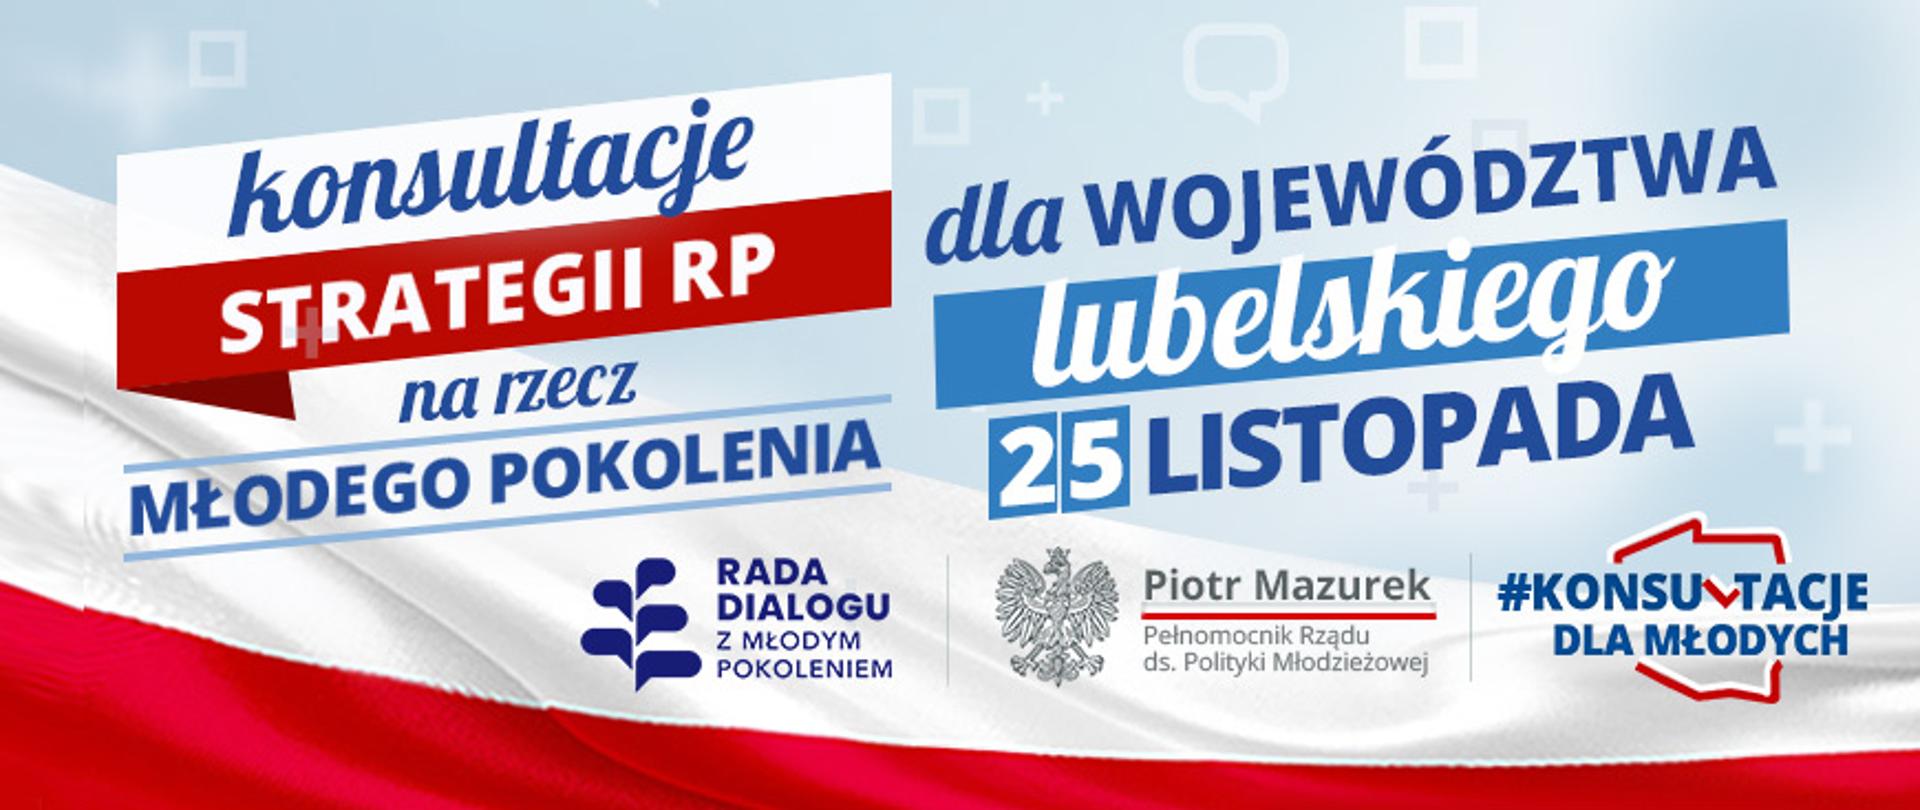 www_Konsultacje_dla_woj_lubelskiego